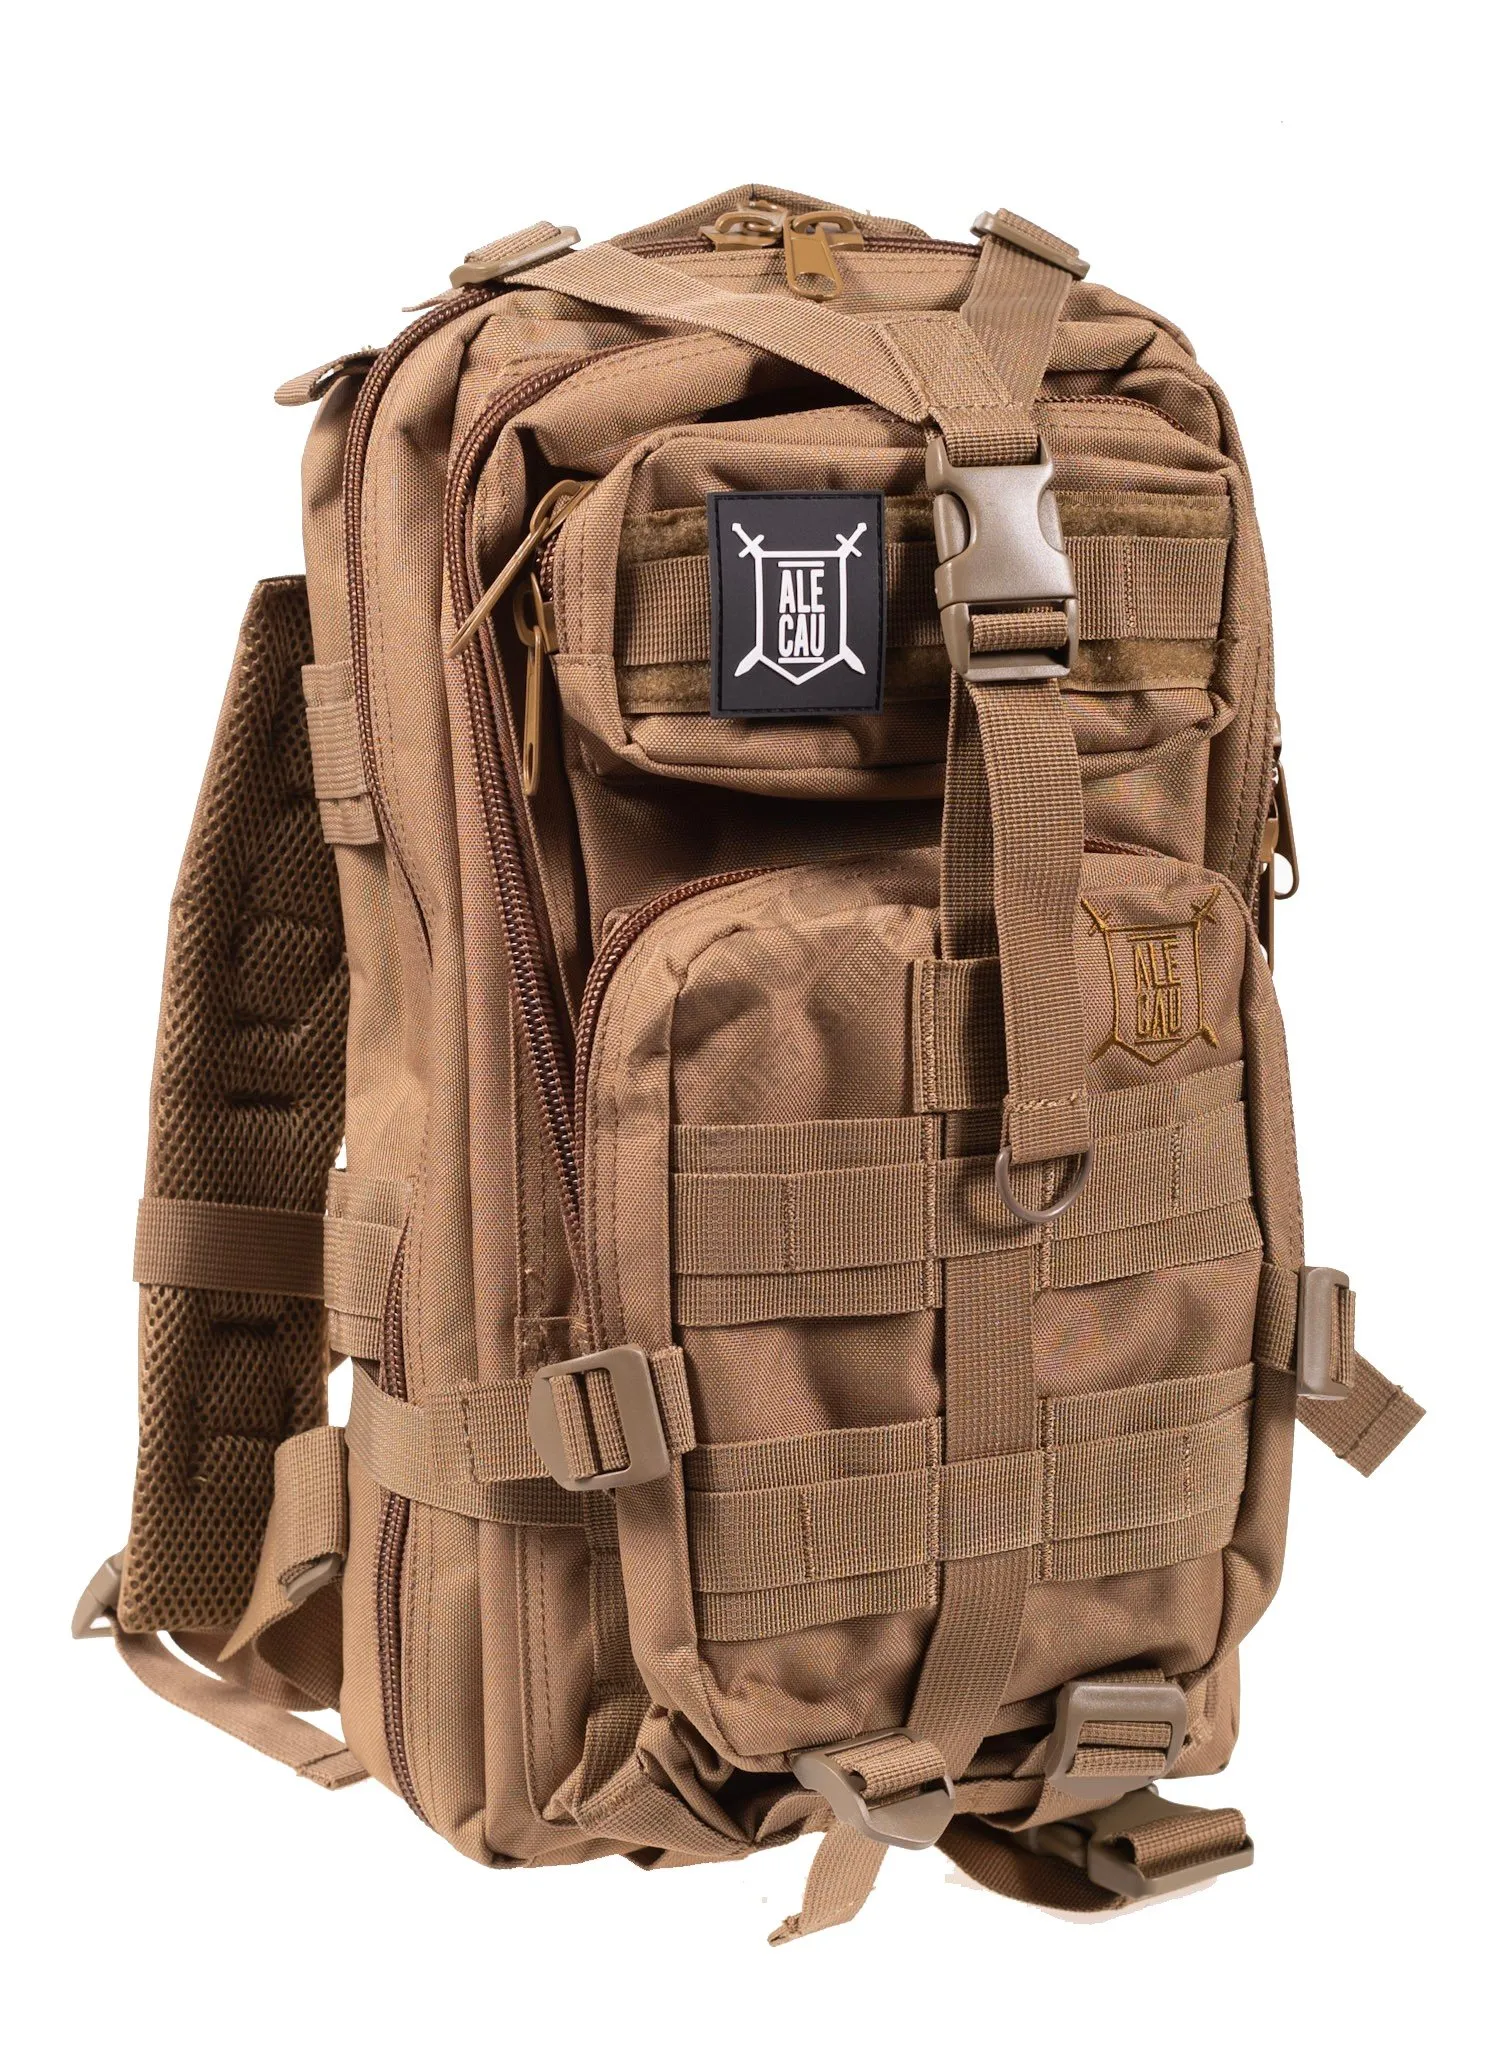 Tactical Backpack ASSAULT ALE CAU 20L (Tan) - Delta Armory